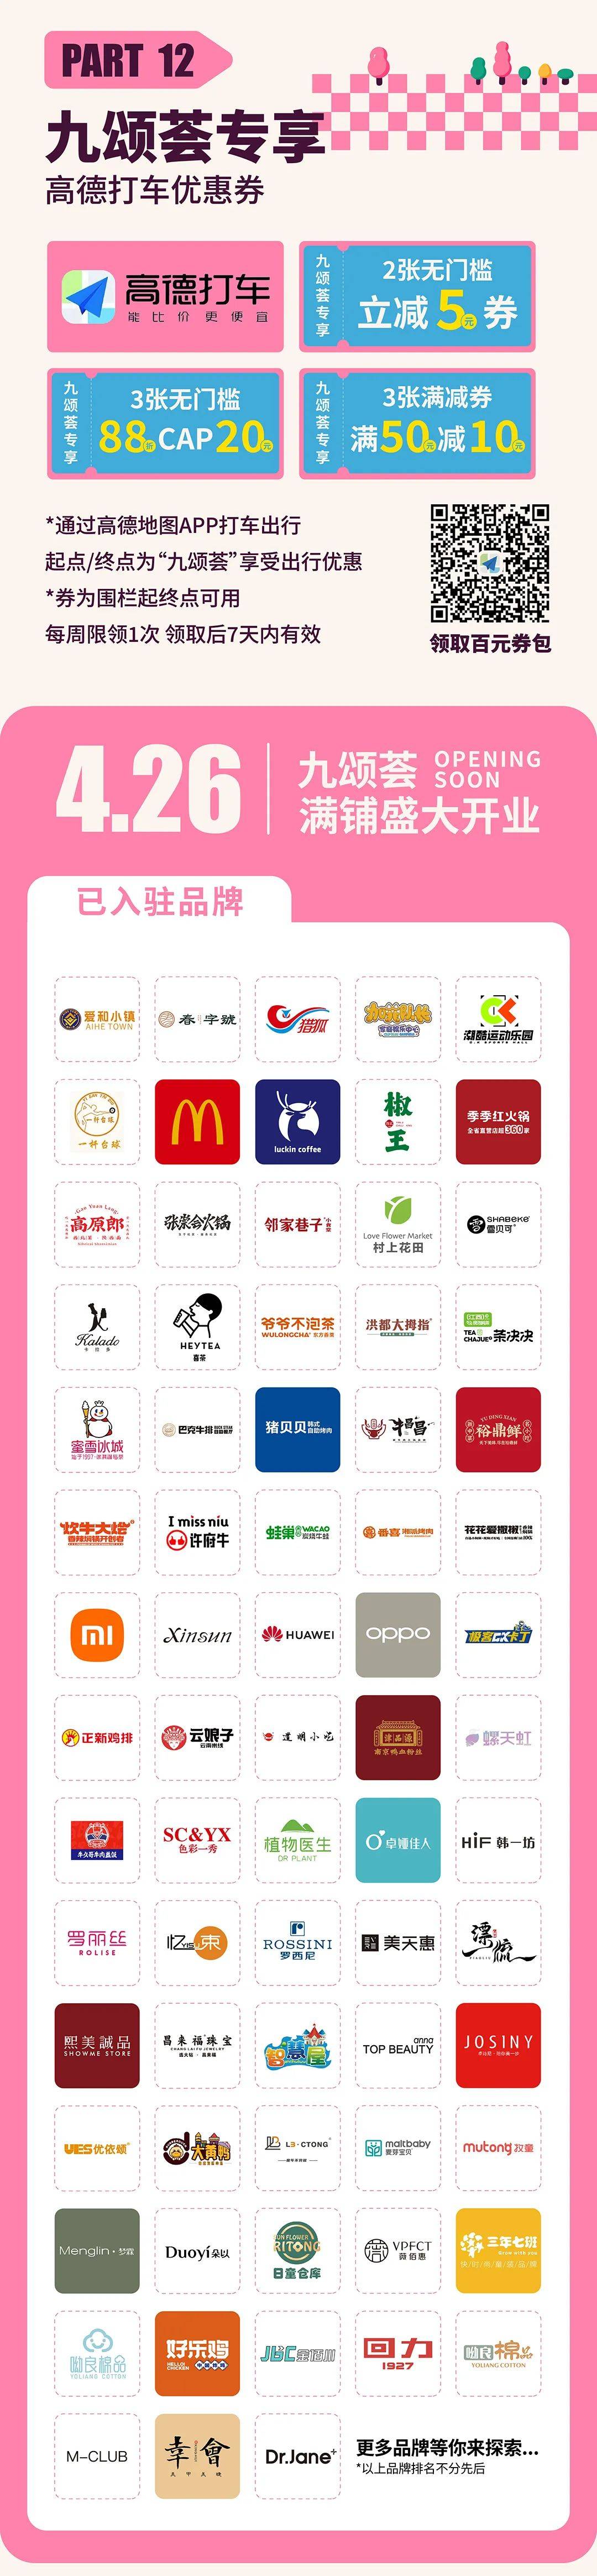 南昌t16mall品牌列表图片